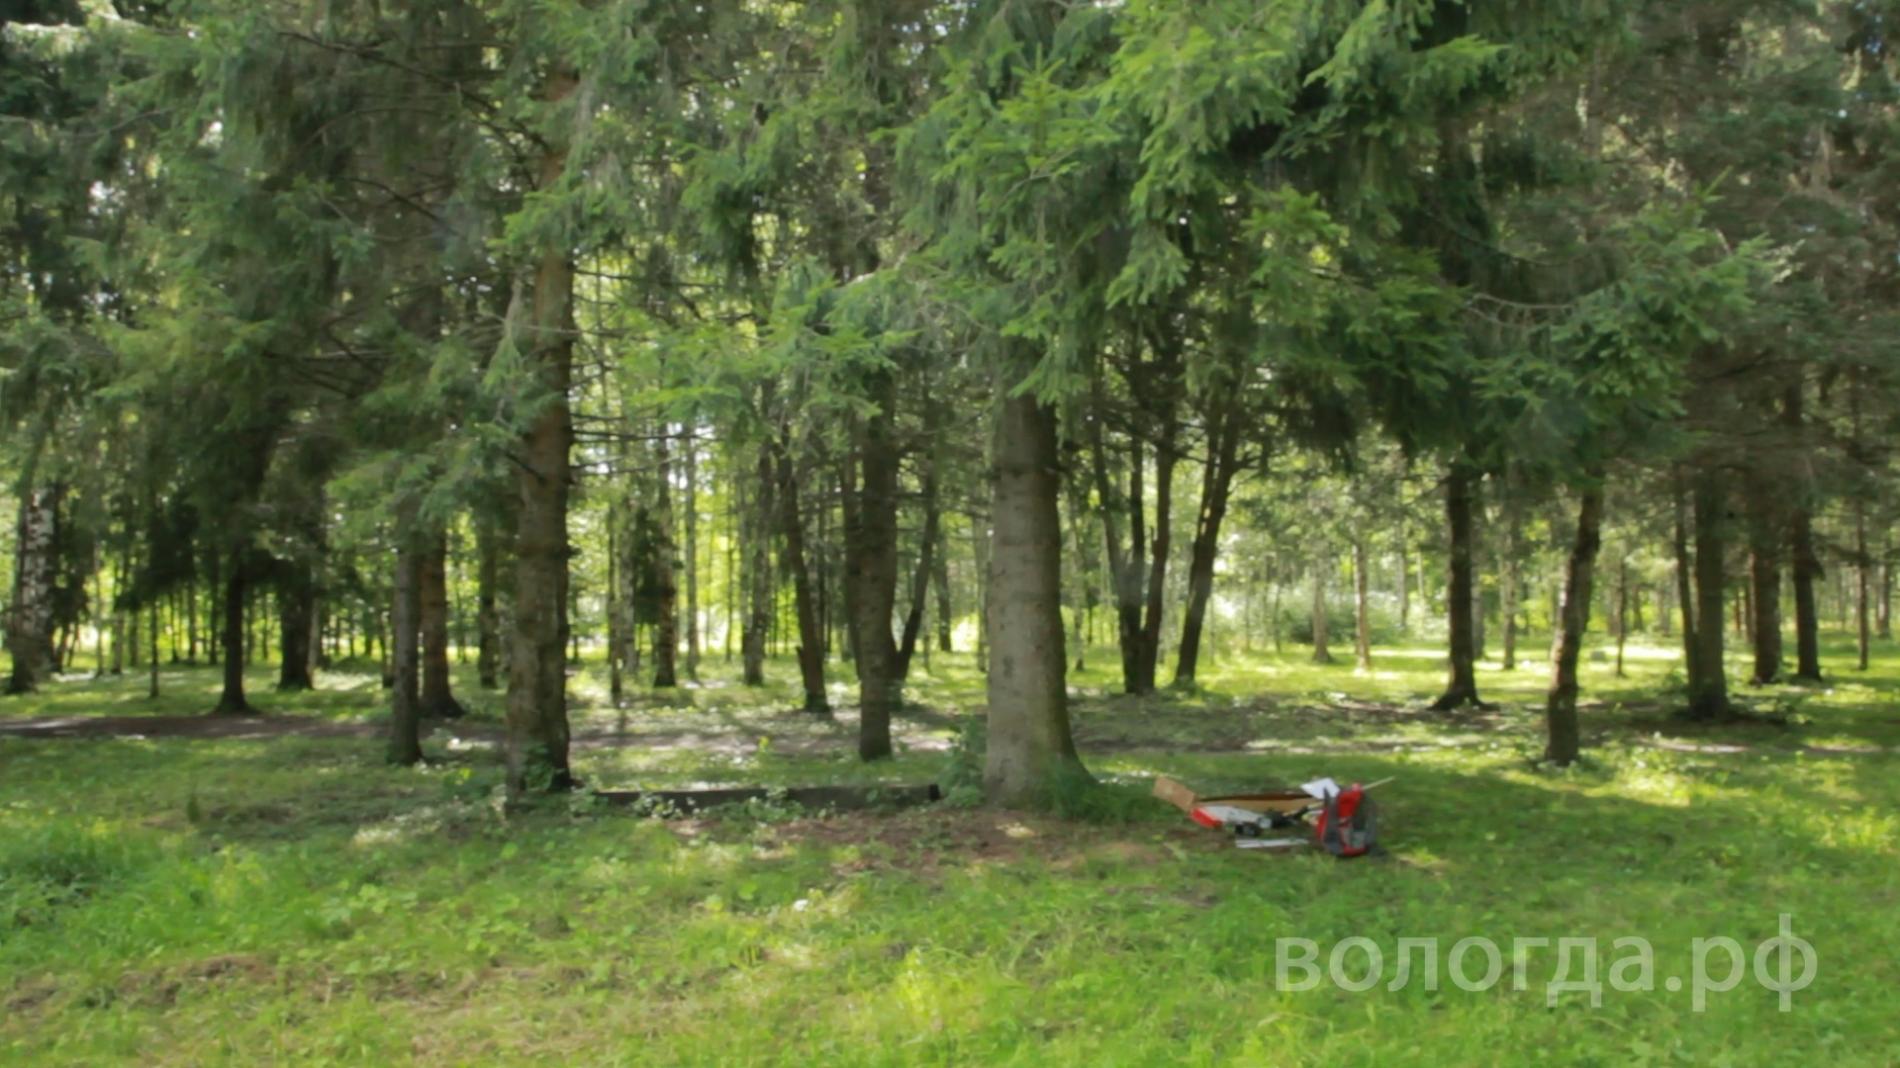 2,5 тысячи деревьев планируют высадить в Вологде до конца года